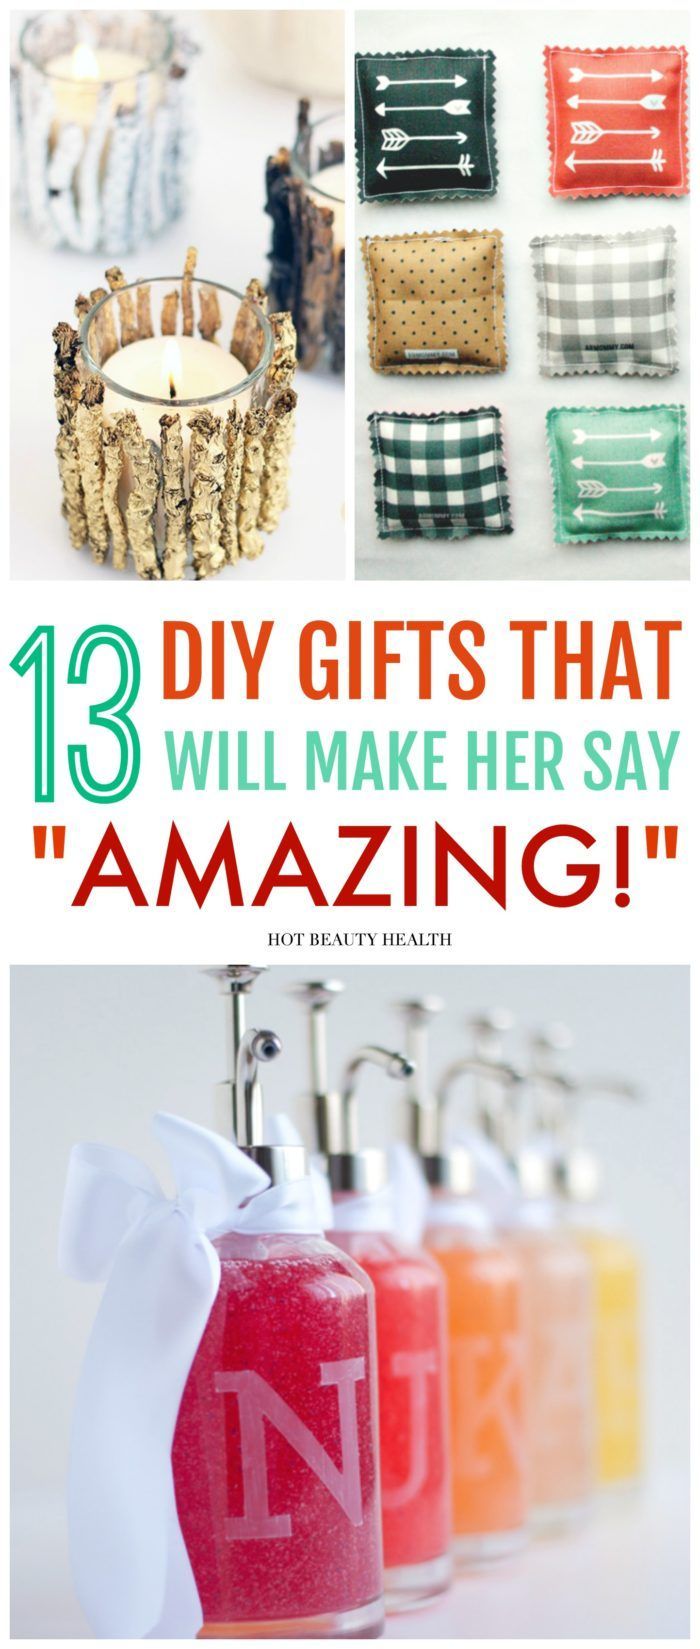 13 Amazing DIY Christmas Gift Ideas People Actually Want - 13 Amazing DIY Christmas Gift Ideas People Actually Want -   17 diy Gifts for women ideas